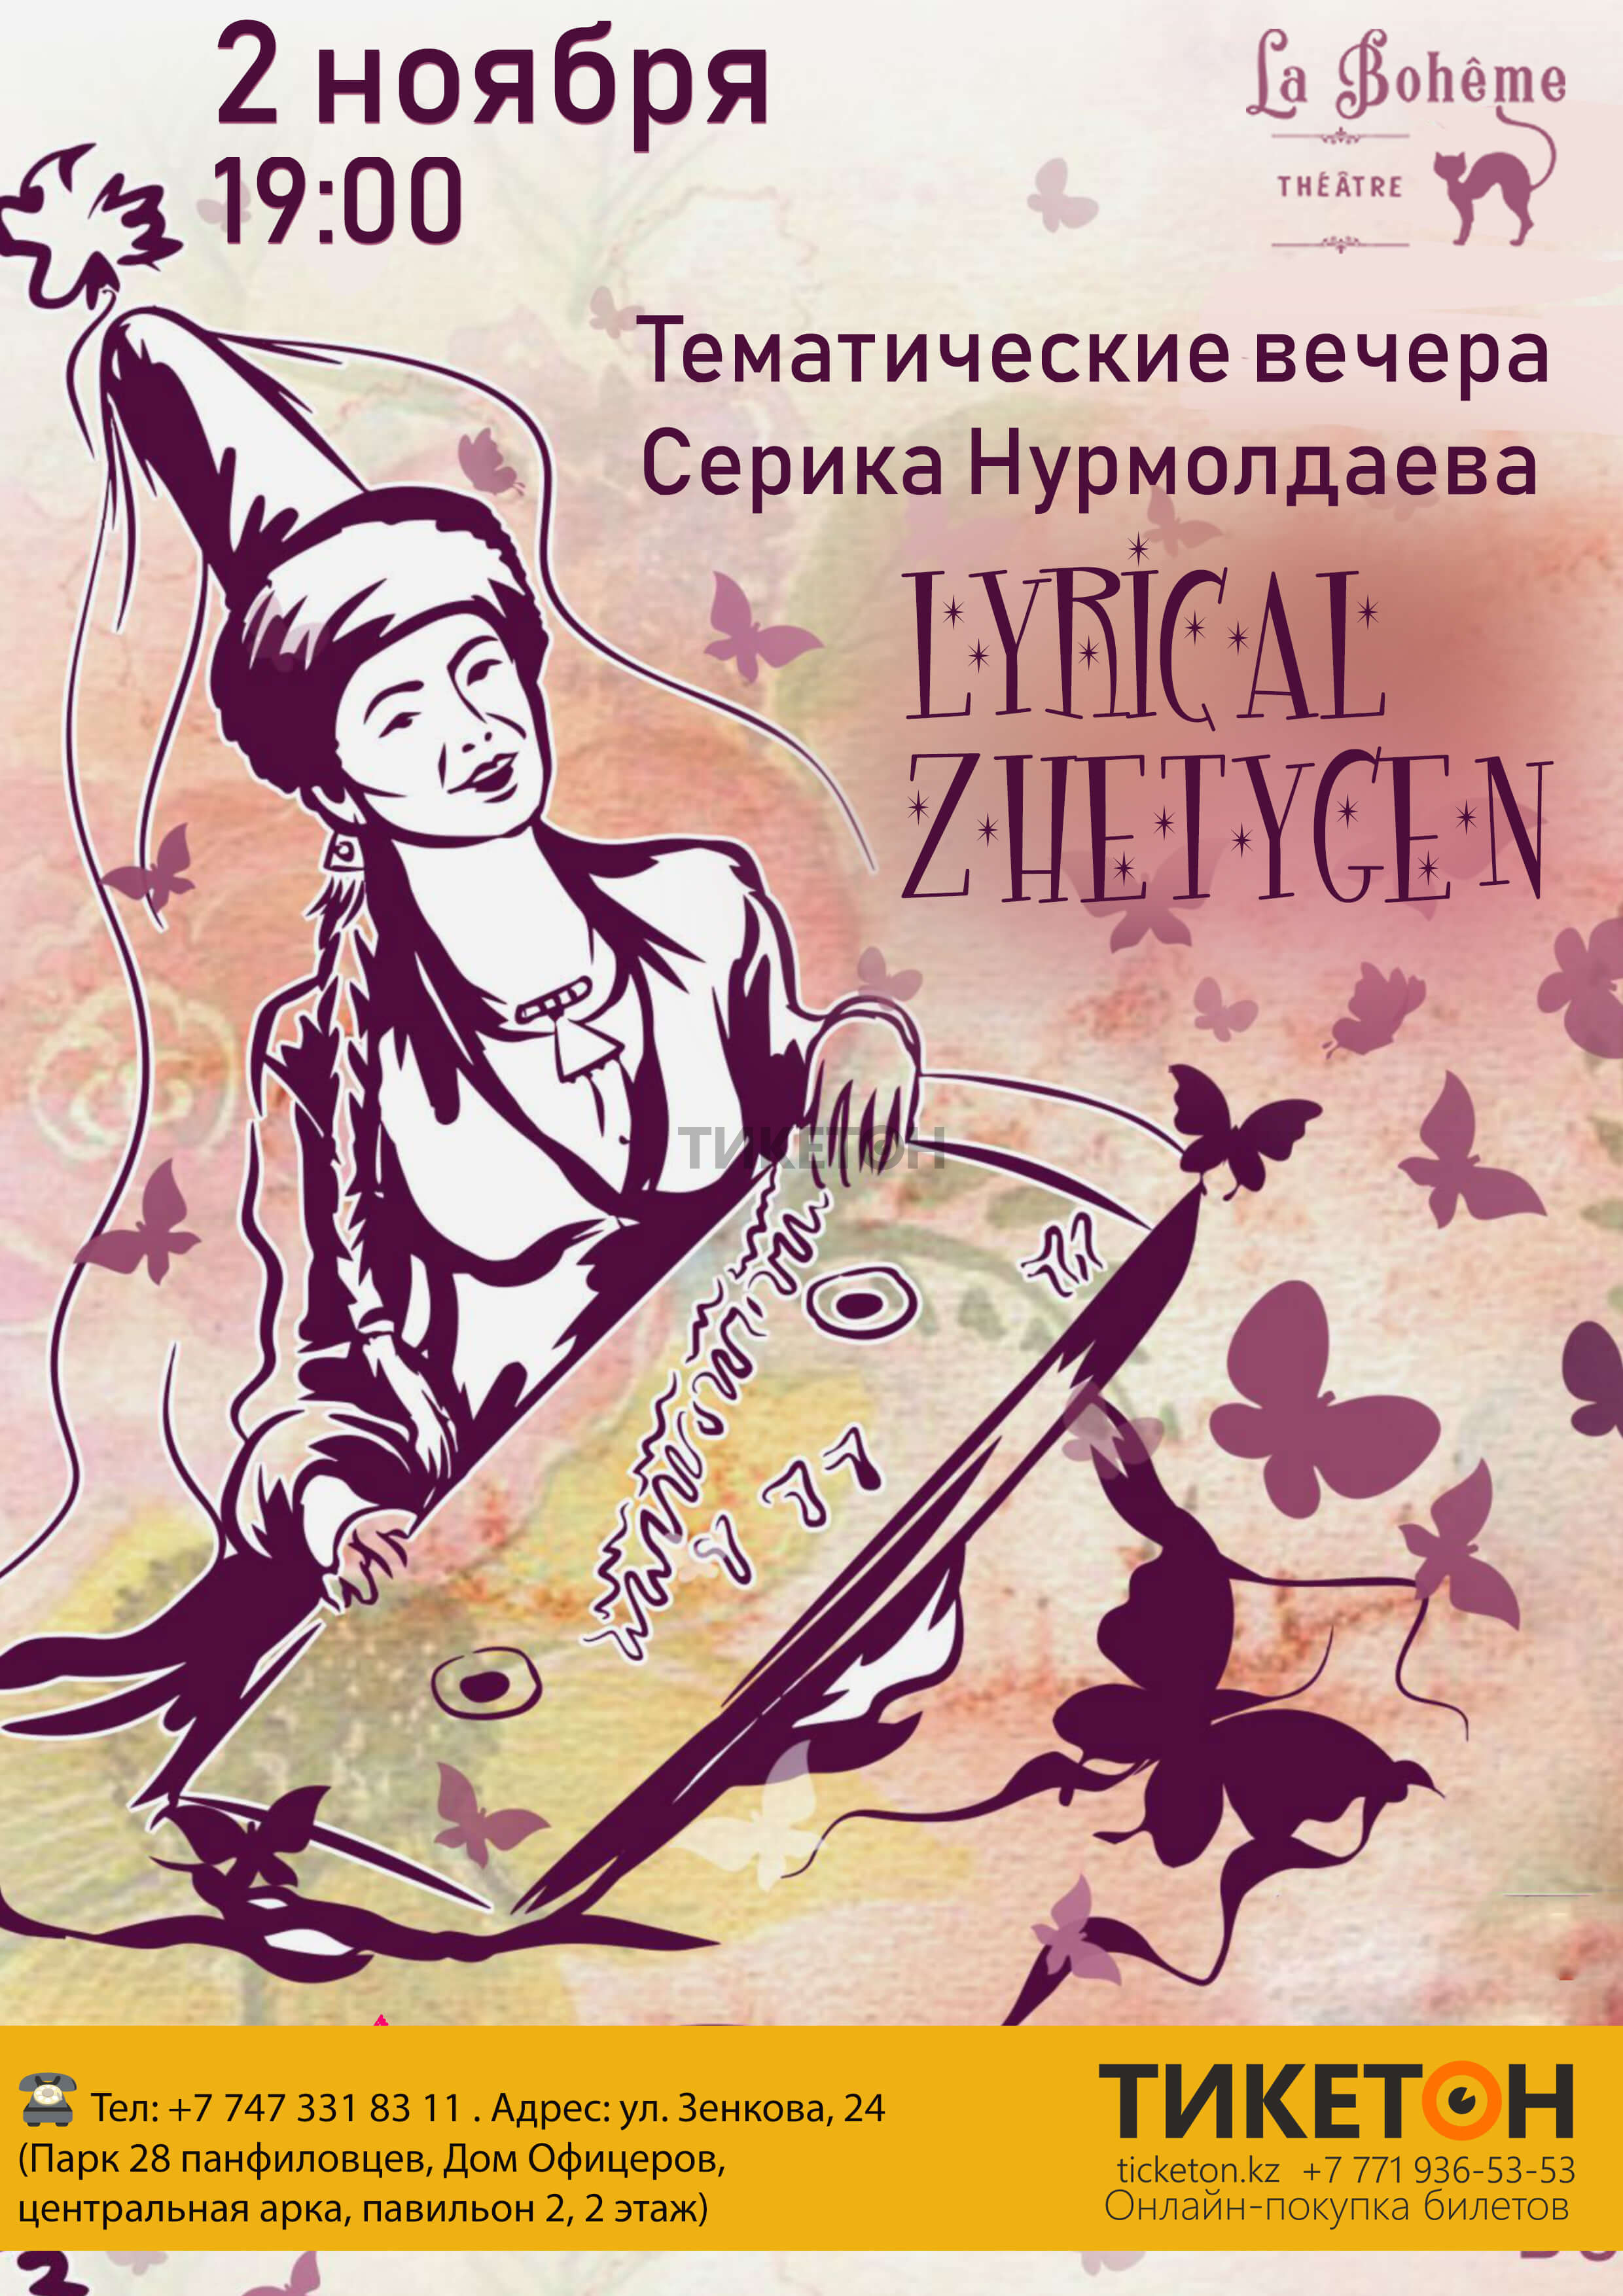 lyrical-zhetigen-serik-nurmoldaev